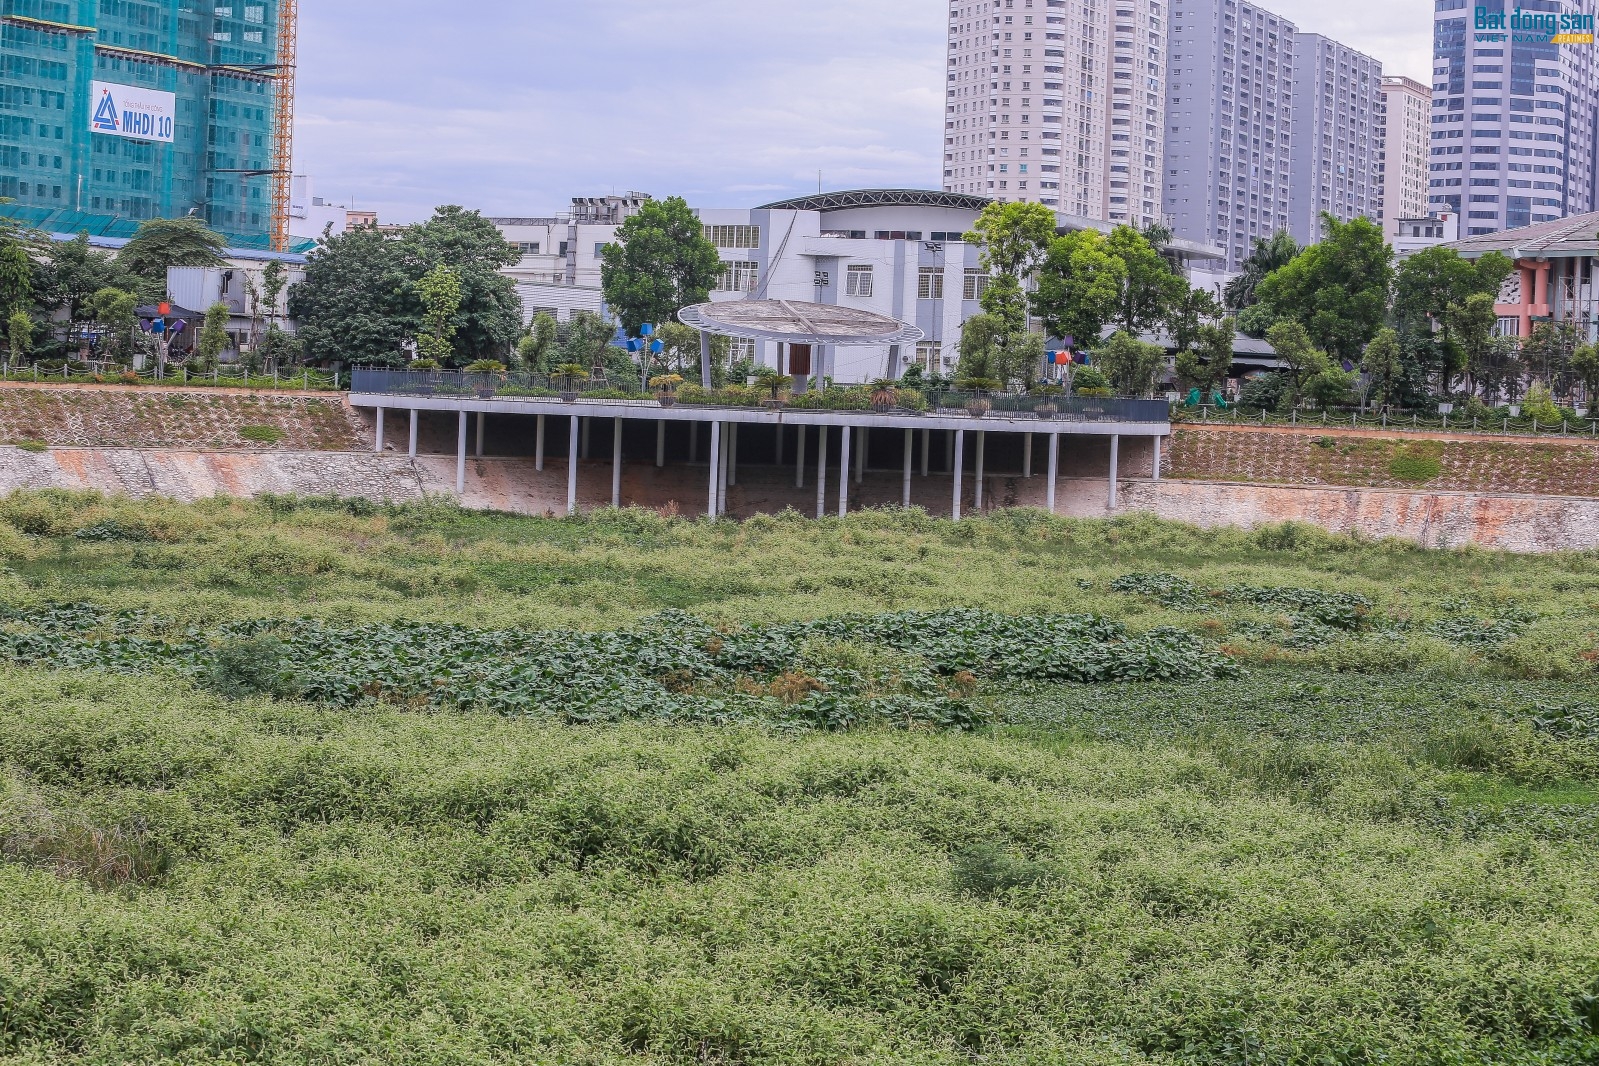 Theo quy hoạch, tổng diện tíchp/đất nghiên cứu lập quy hoạch là 13,23 ha, bao gồm Trung tâm văn hóa thể thao quận Thanh Xuân và các khu đất phía trước Trung tâm gồm 3 khu chức năng: Hồ điều hòa, khu vực công viên và đất hạ tầng kỹ thuật